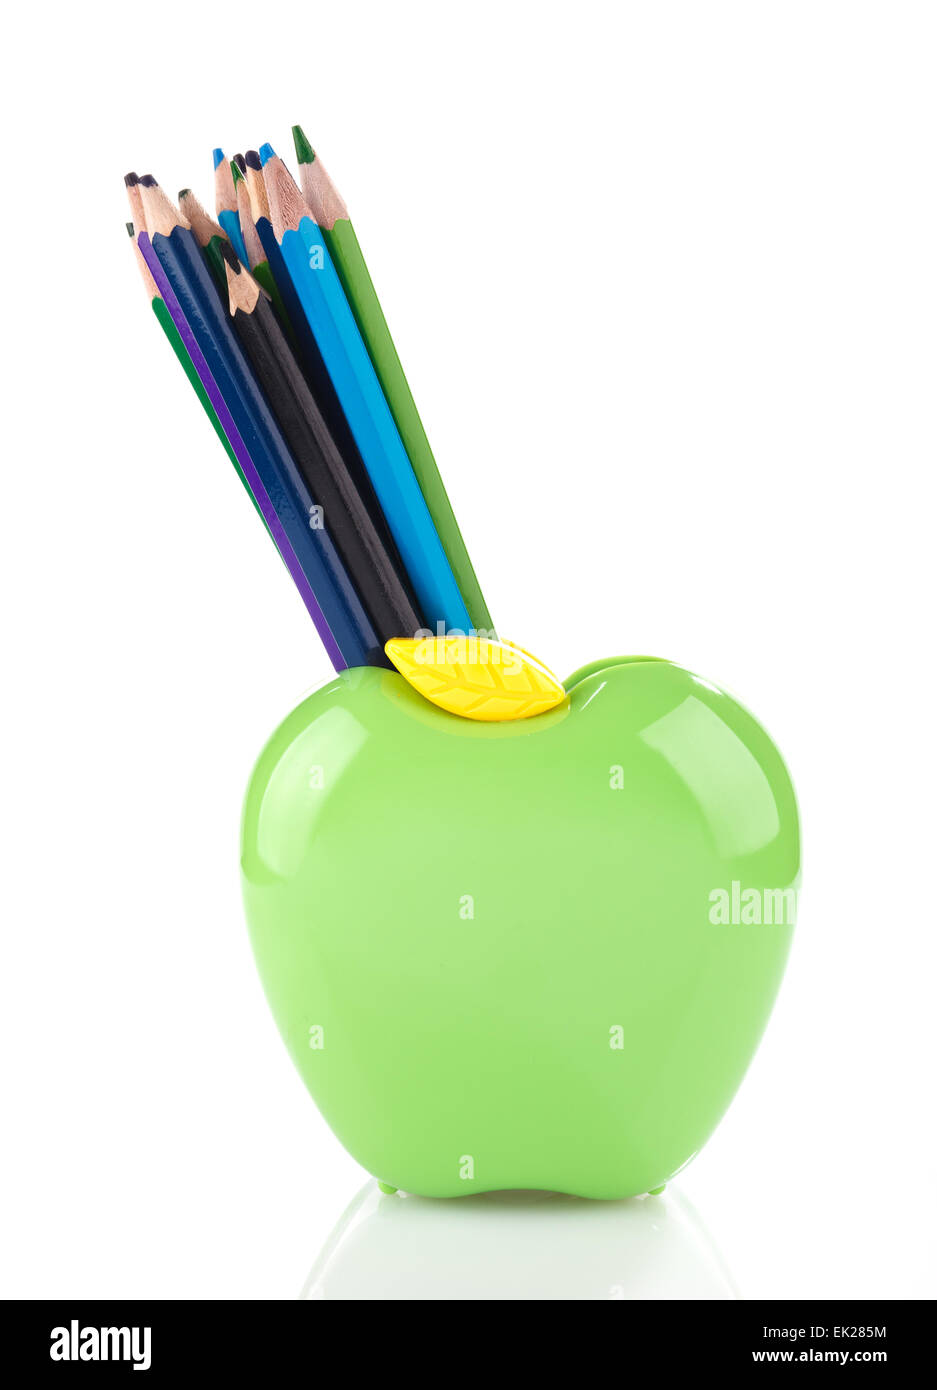 Bunte Bleistifte im Apple förmigen Ständer Stockfoto